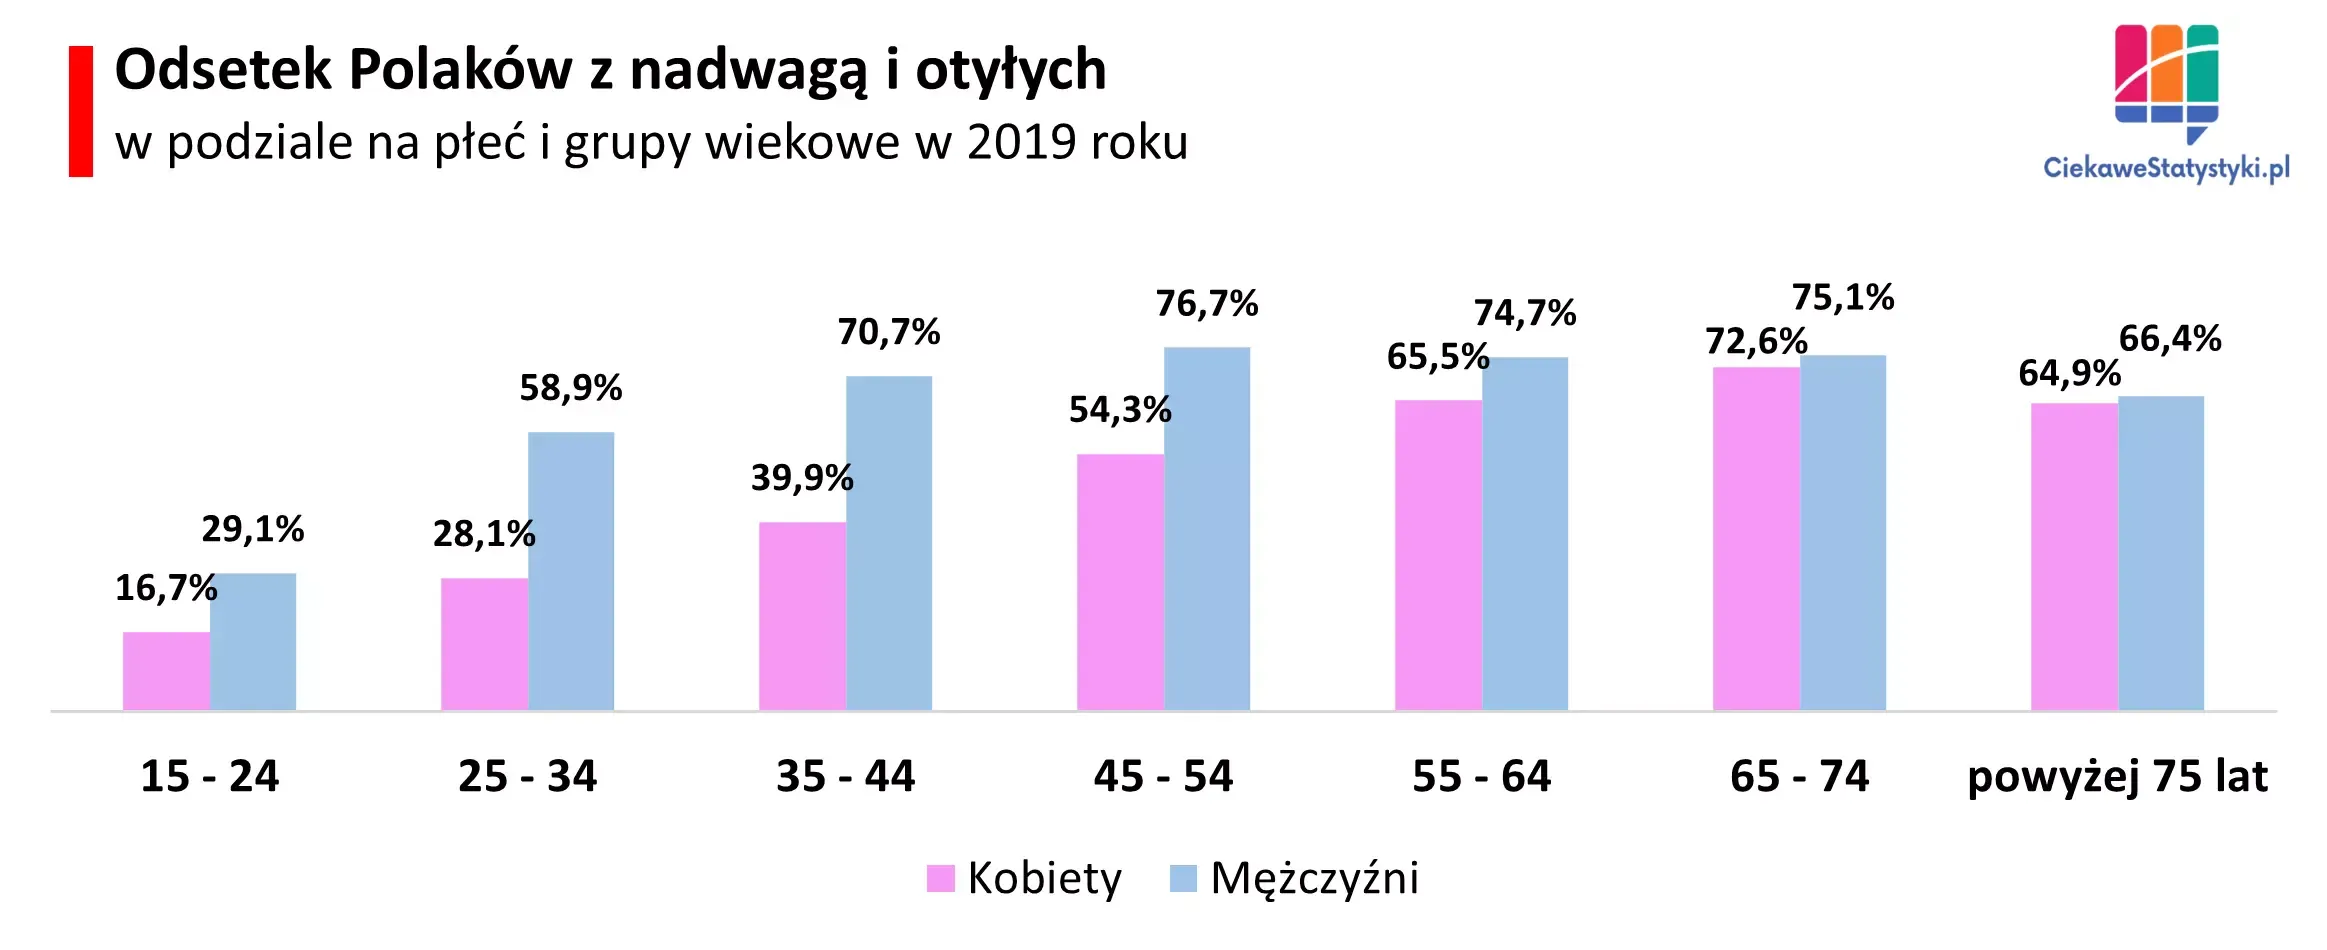 Nadwaga i otyłość wśród kobiet i mężczyzn w Polsce wg wieku na wykresie